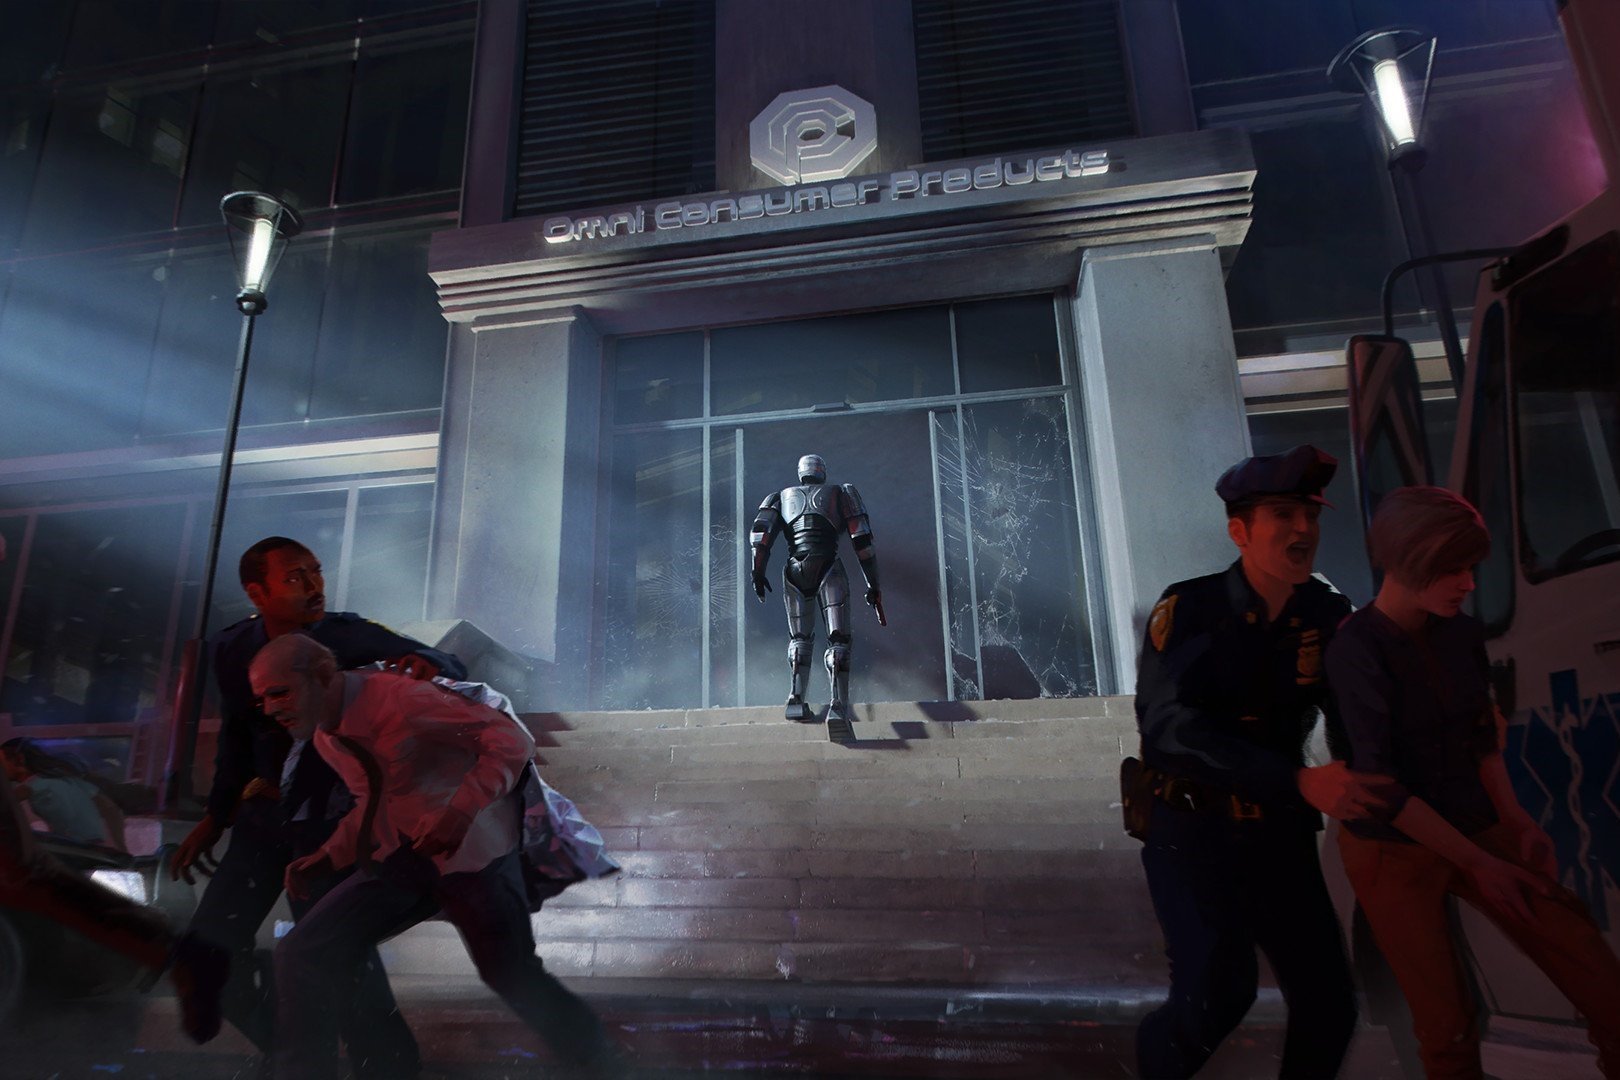 RoboCop: Rogue City chegam em junho de 2023